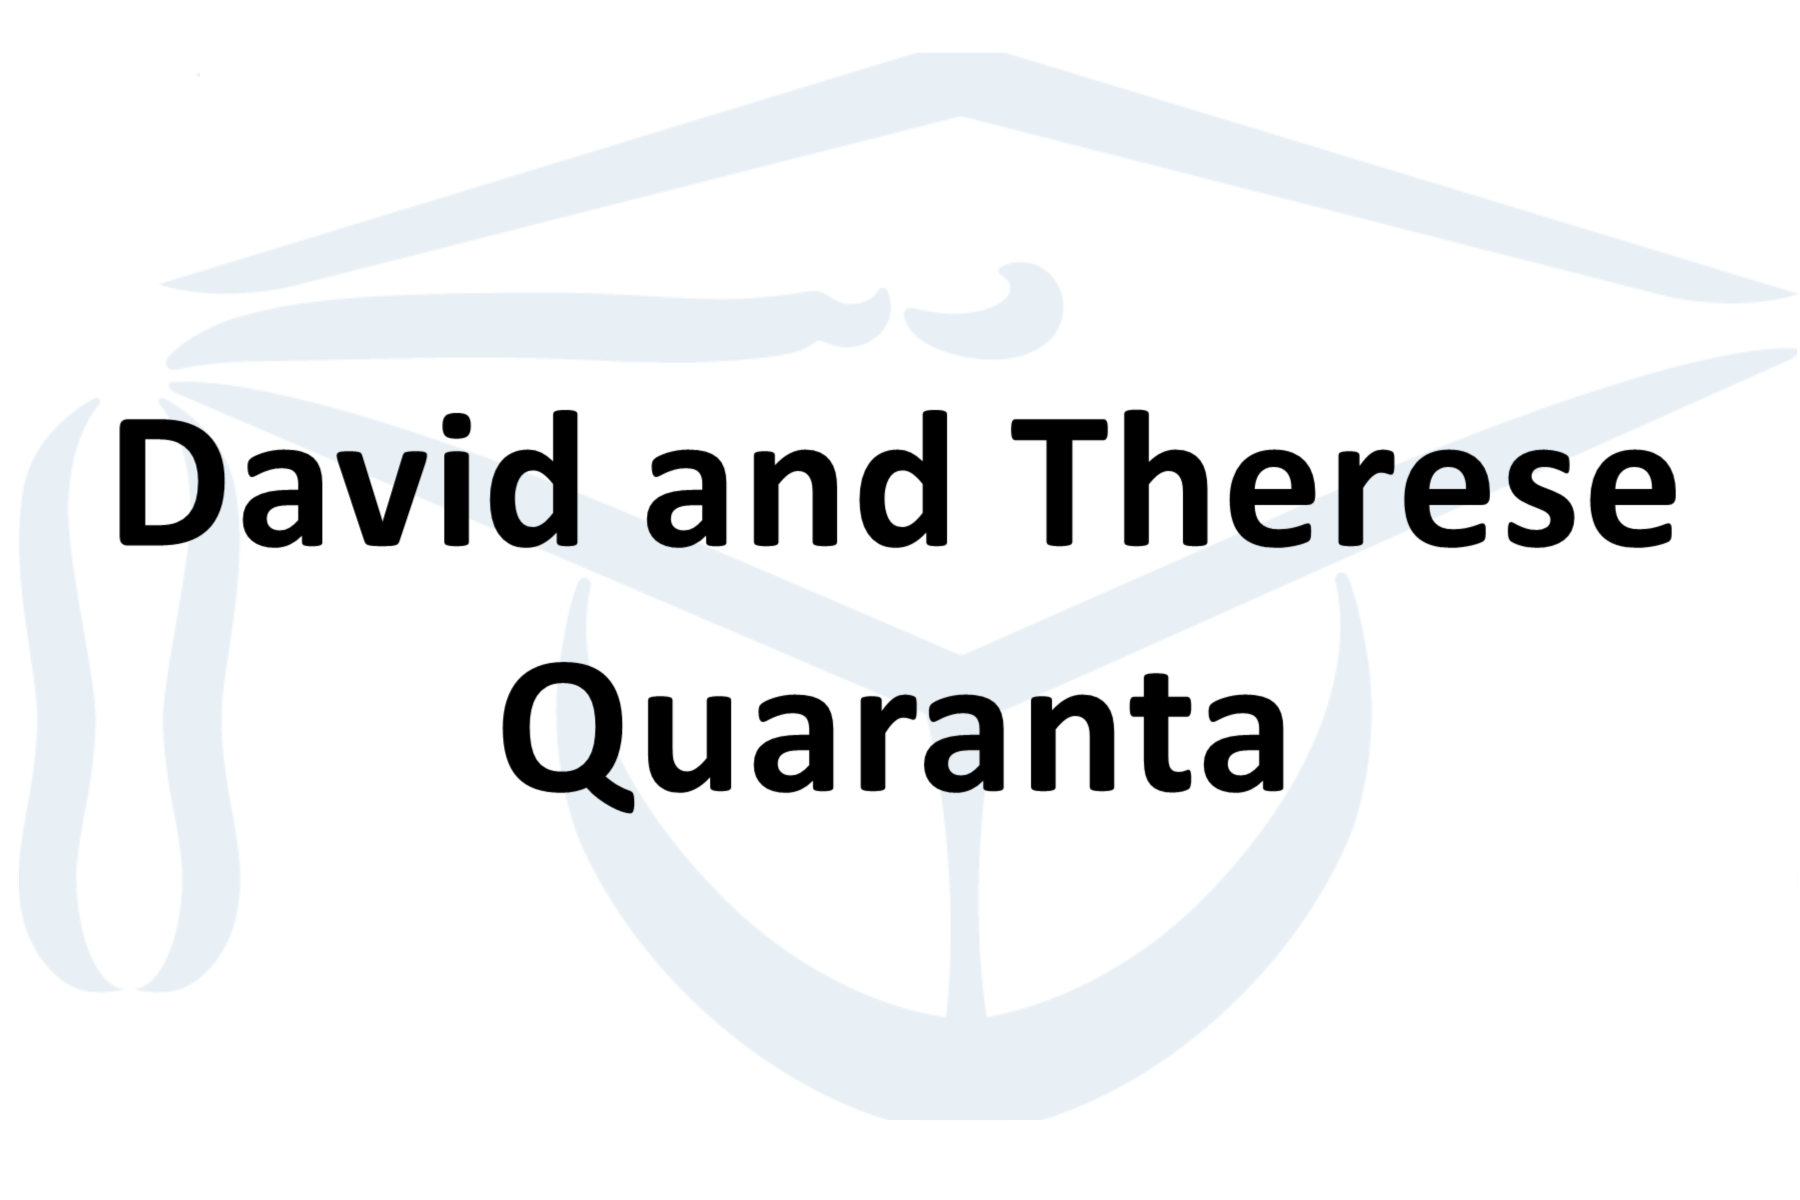 David and Therese Quaranta